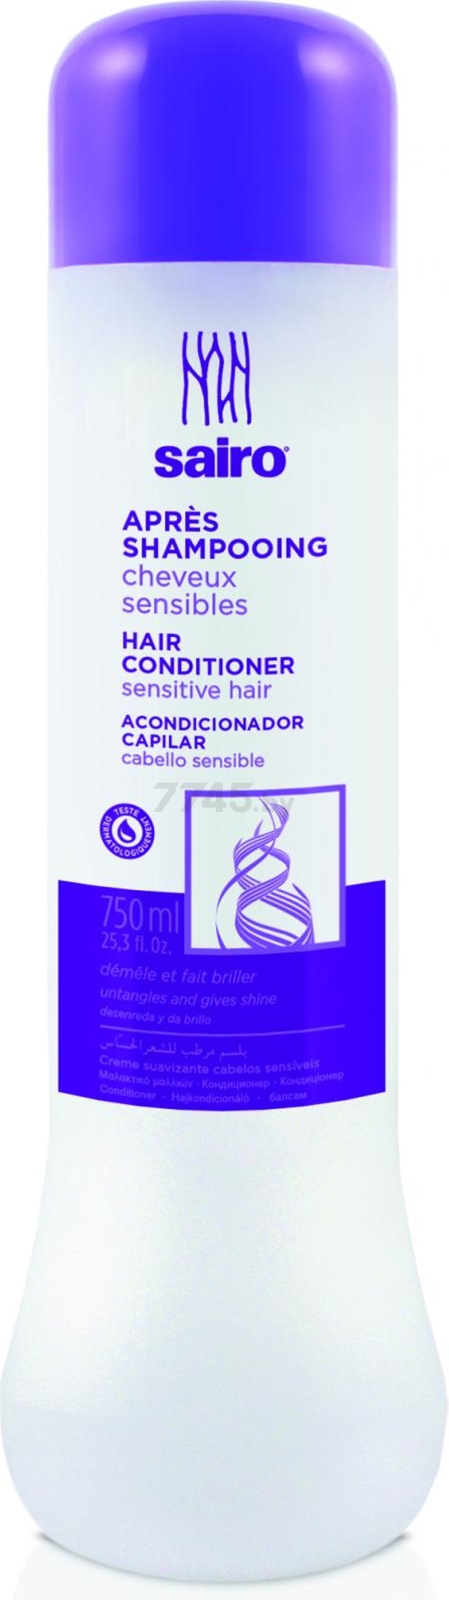 Кондиционер SAIRO Для чувствительных волос 750 мл (8433295051198)